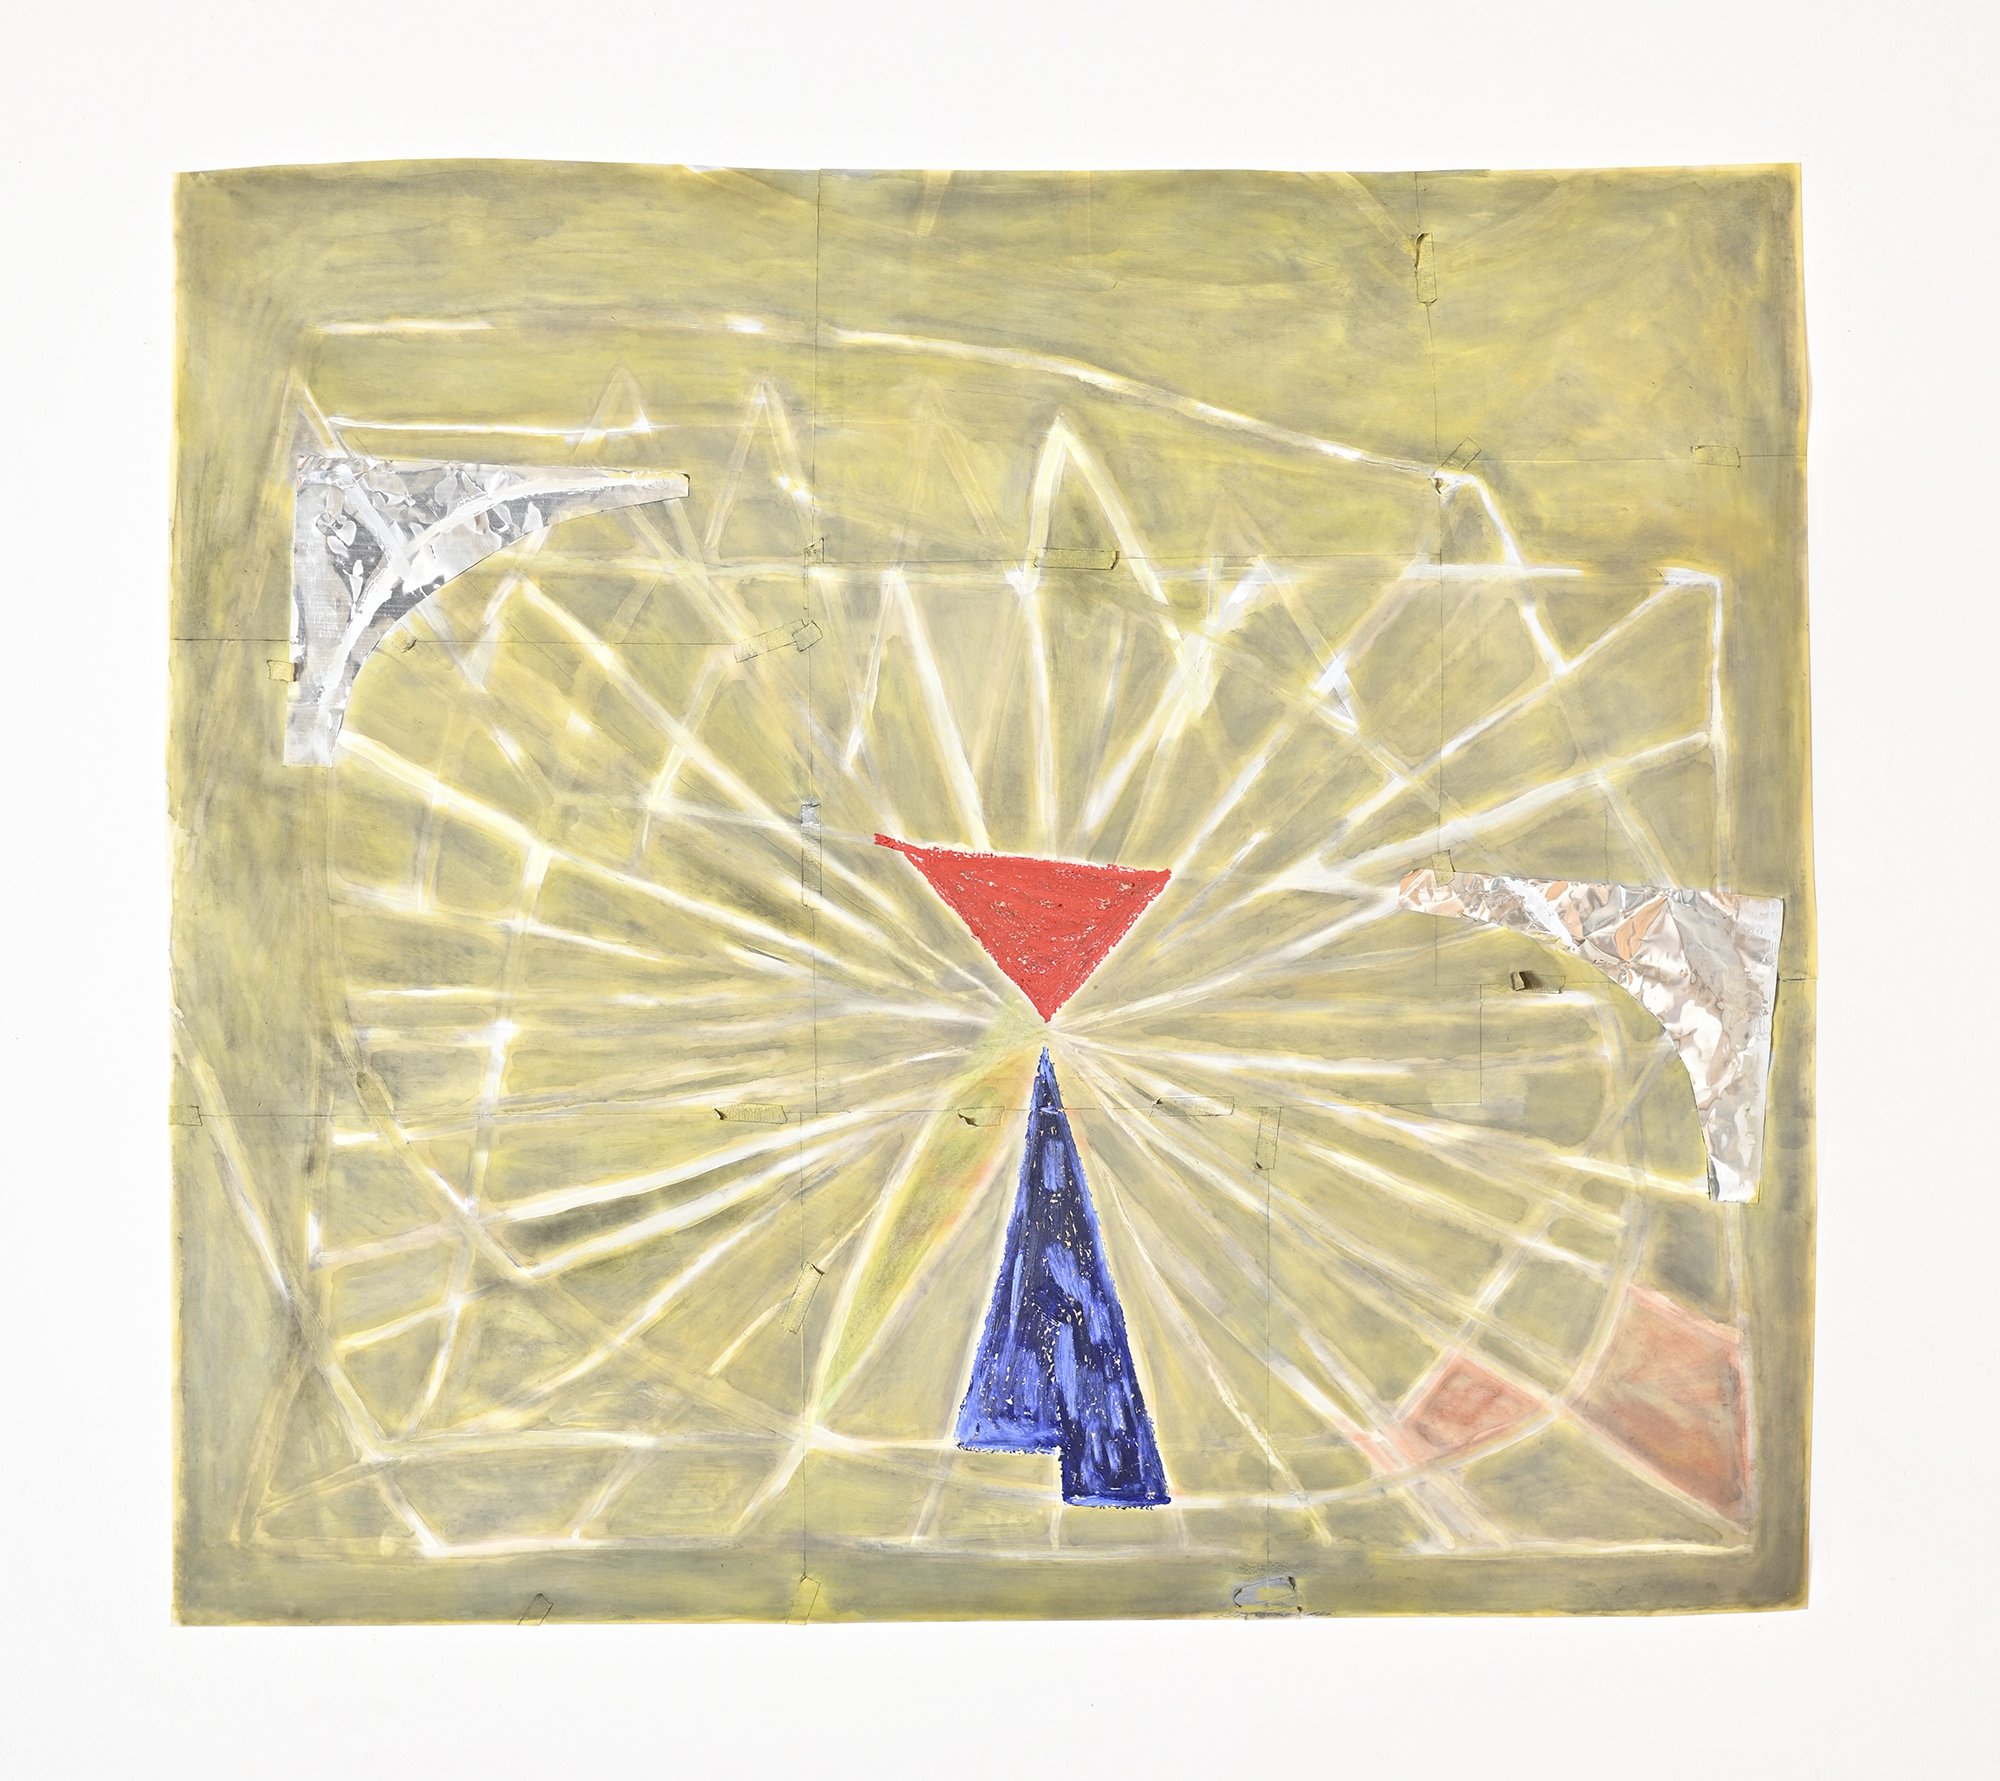   Optic #3  ( red triangle), oil stick, pastel, aluminum, graphite, gesso on vellum, 41” x 36” 